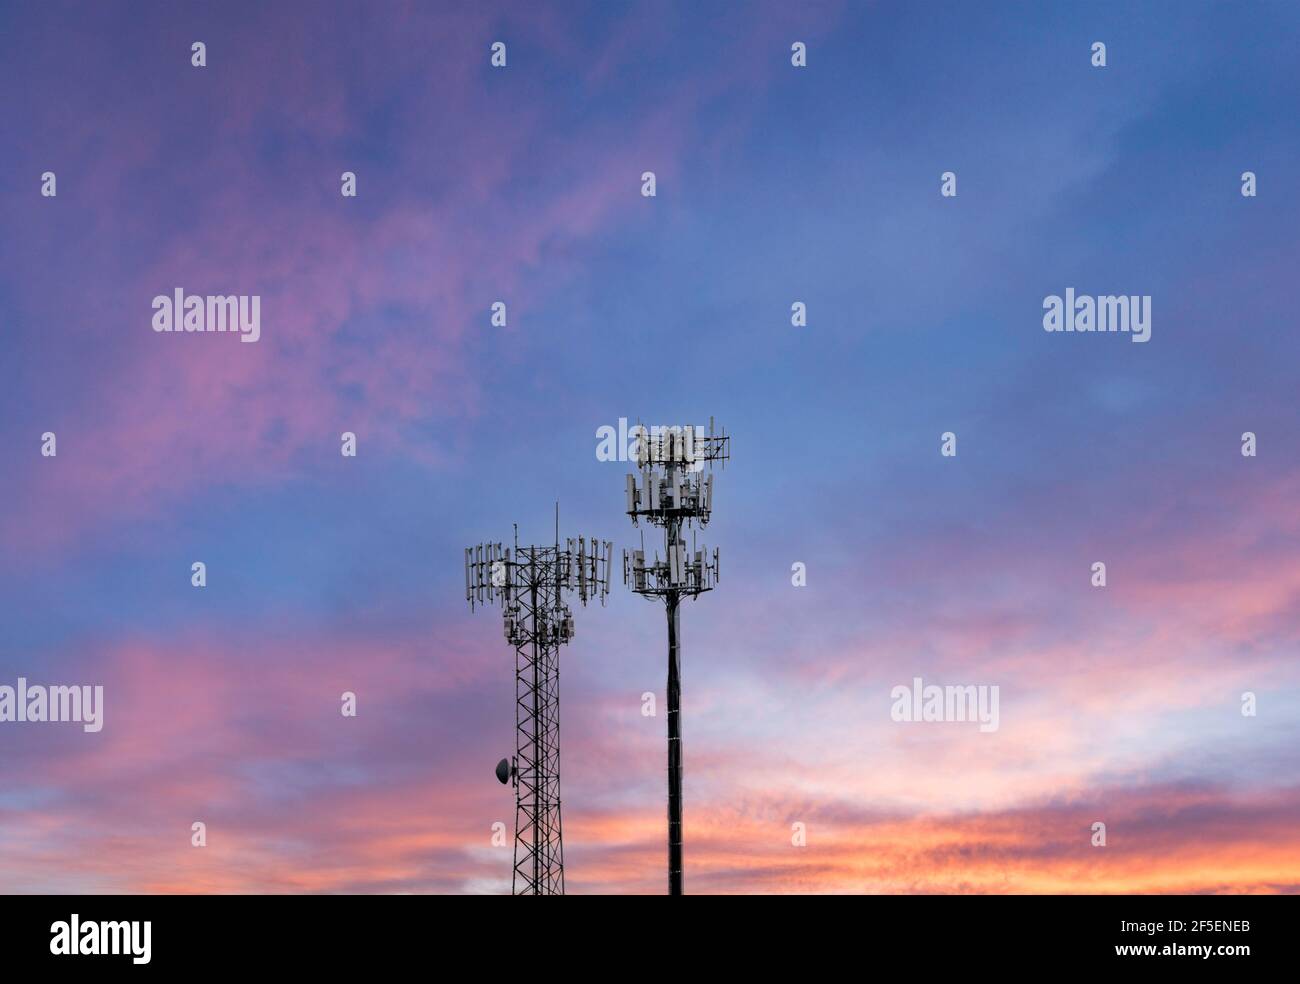 Zwei Türme, die gegen Sonnenuntergang zelluläre Breitband- und Datendienste für ländliche Gebiete bereitstellen. Zeigt die digitale Teilung. Stockfoto